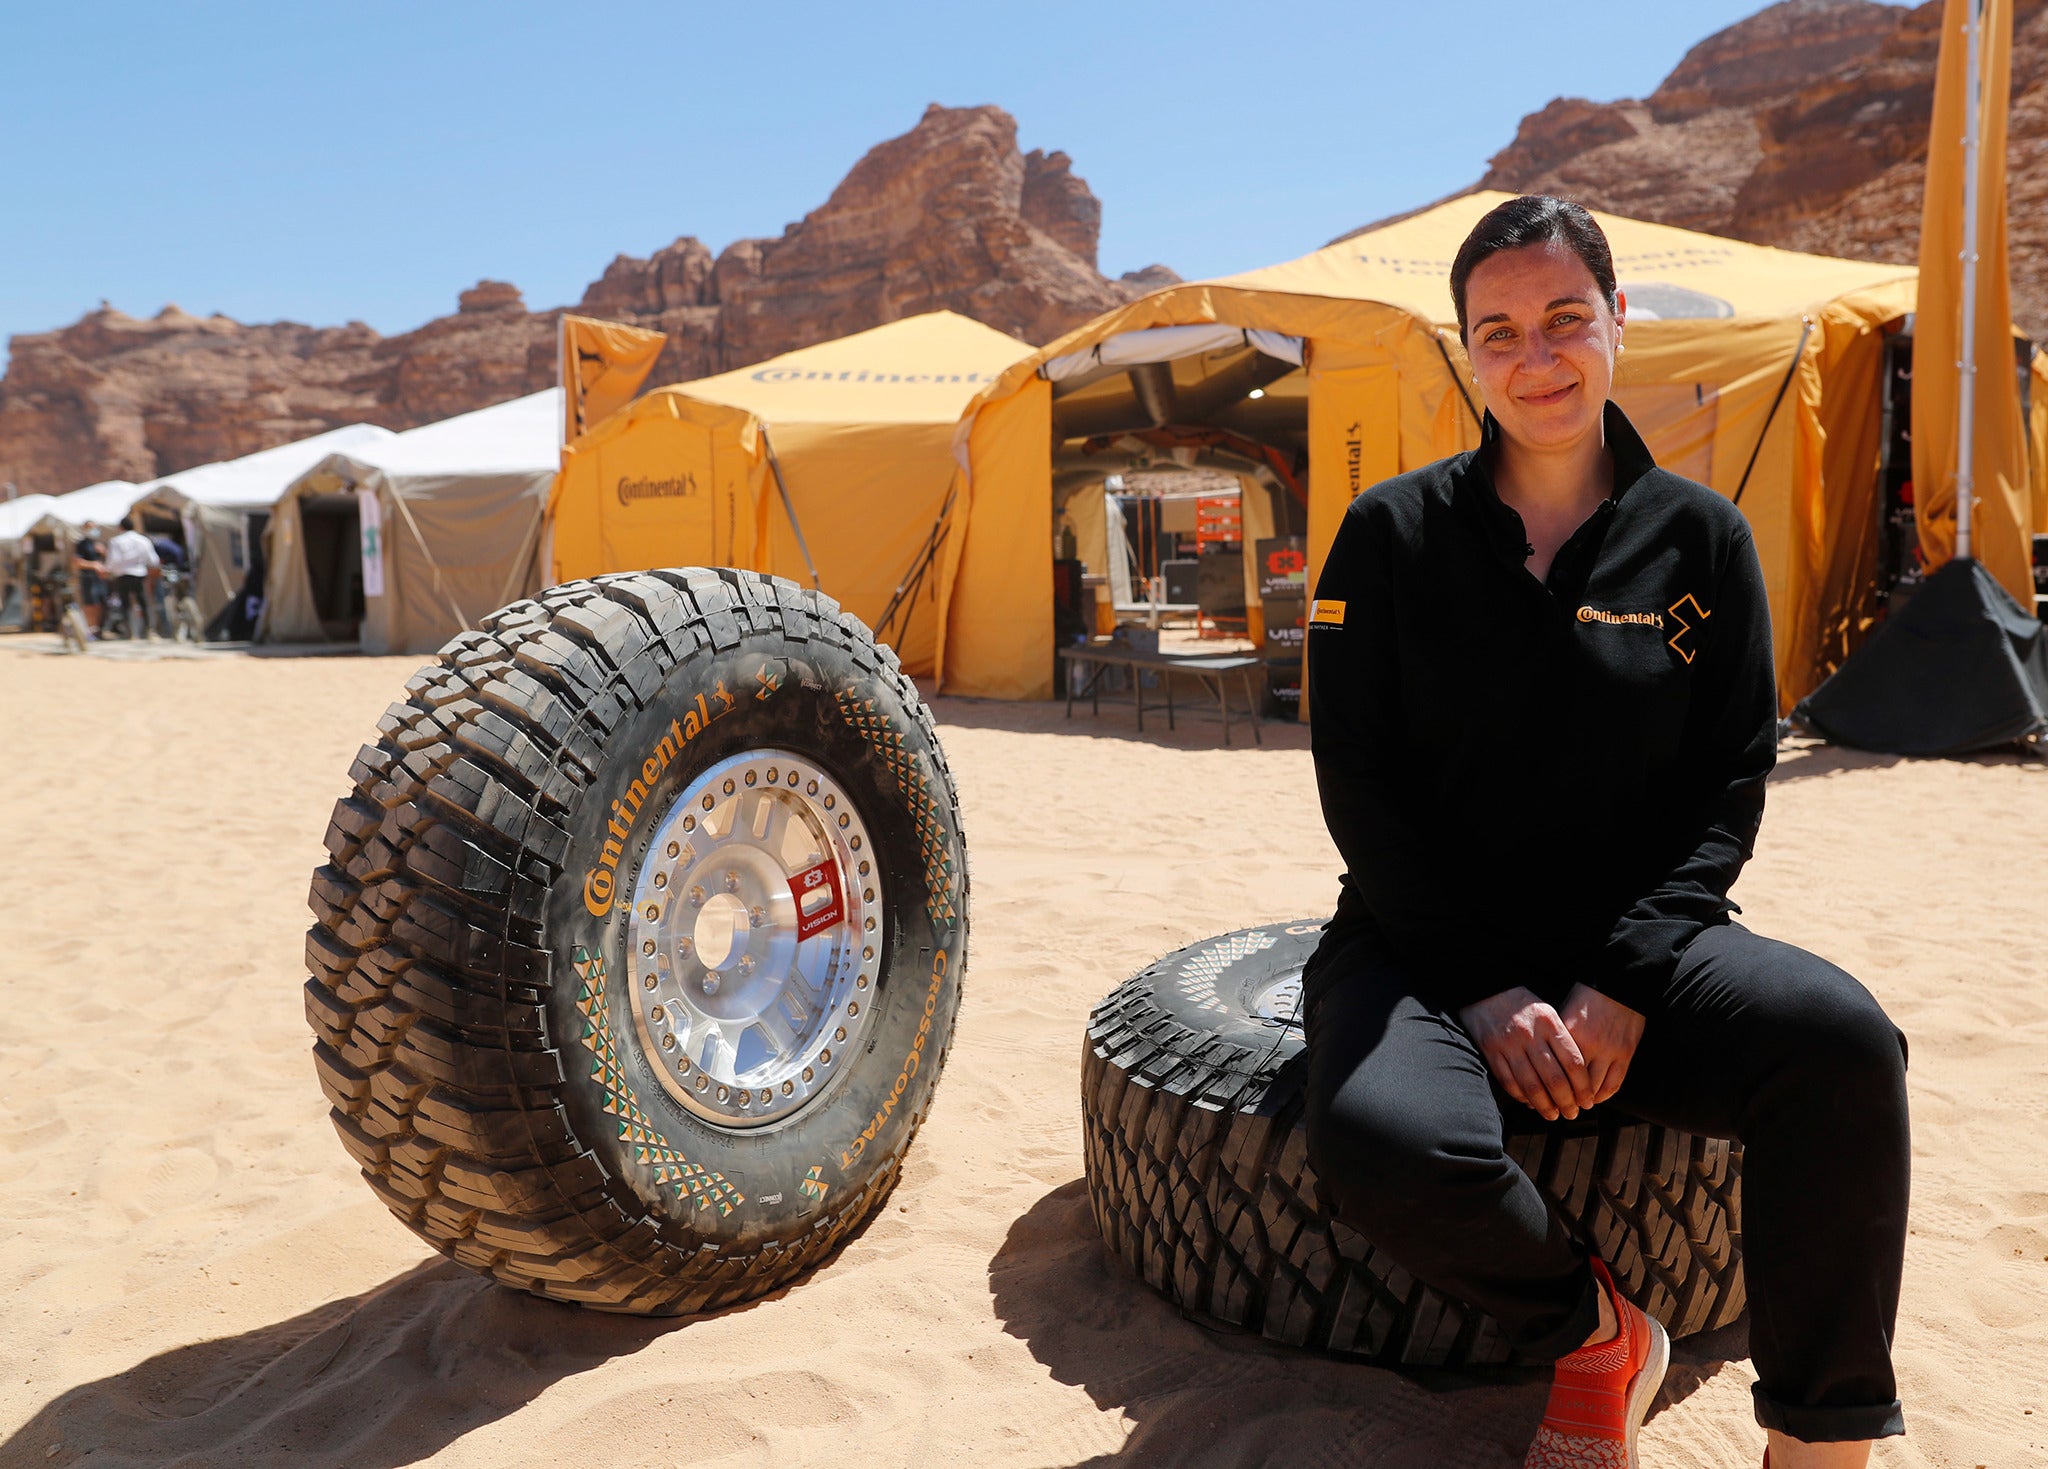 Catarina Silva sentada com os pneus Continental utilizado na prova Extreme-E, no primeiro local da corrida: AIUIa, Arábia Saudita